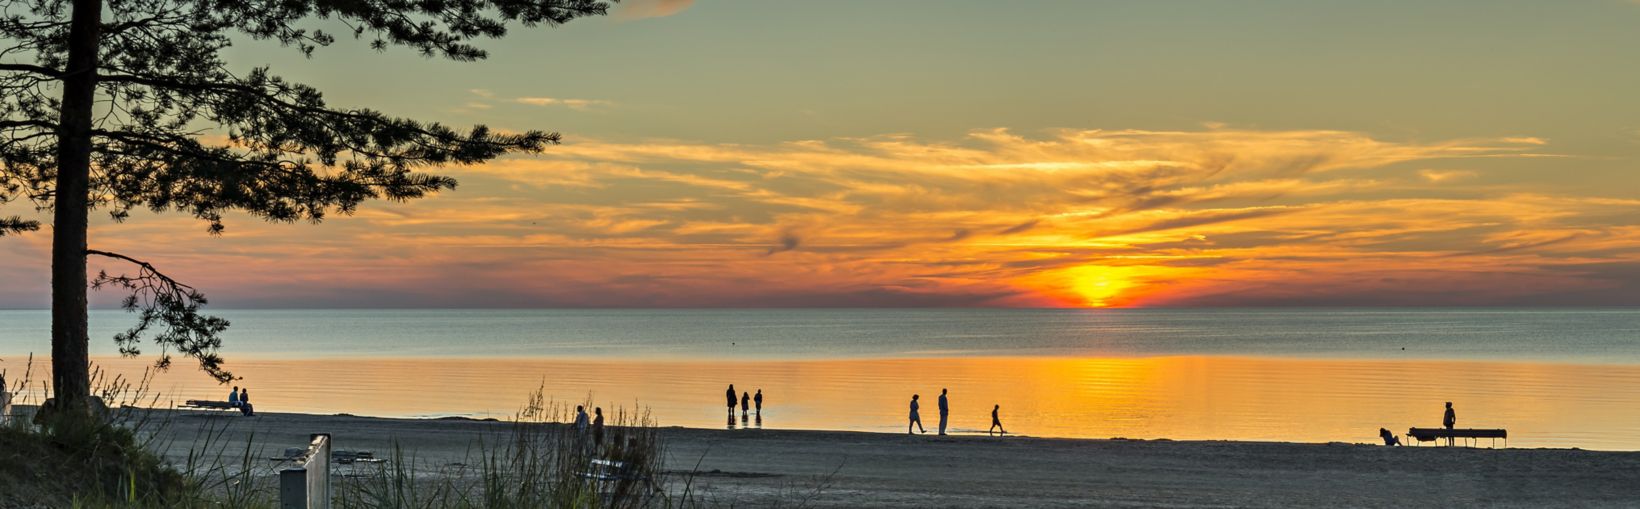 Spalvingas saulėlydis saulėtame paplūdimyje Jūrmaloje – garsiame Baltijos regiono kurorte (Latvija)